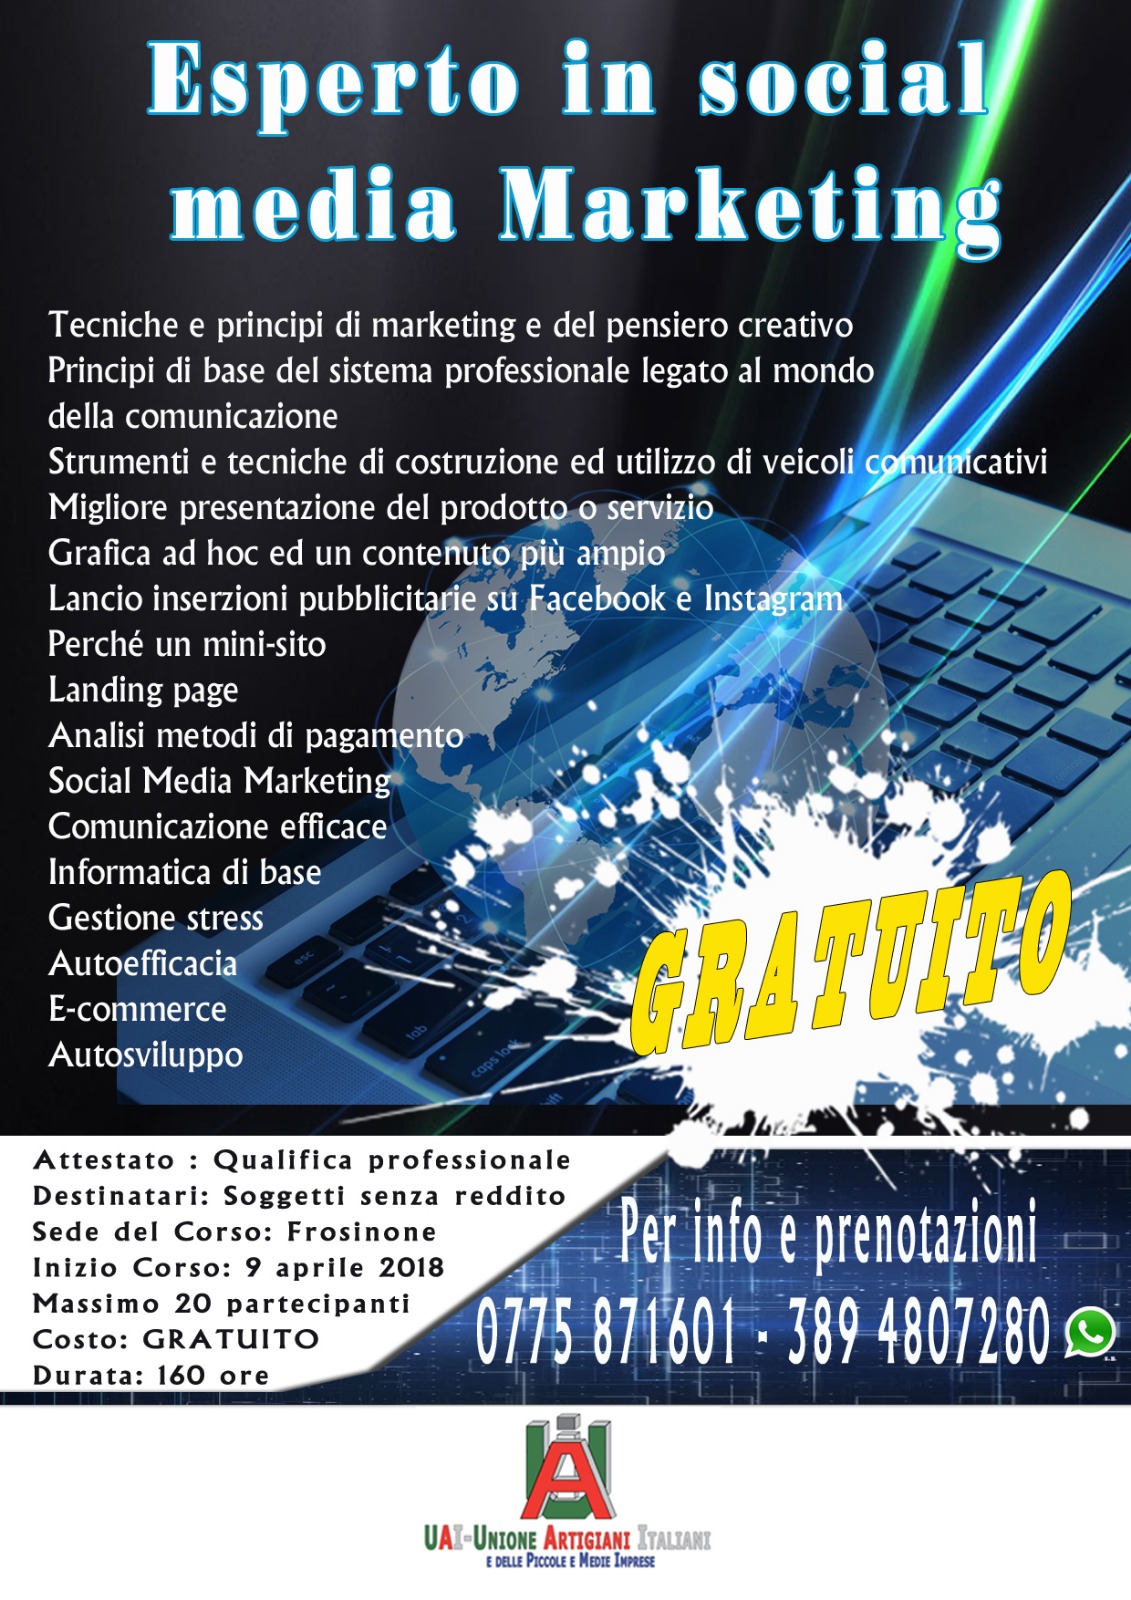 Unione Artigiani Italiani, al via il corso gratuito in esperto in social media marketing